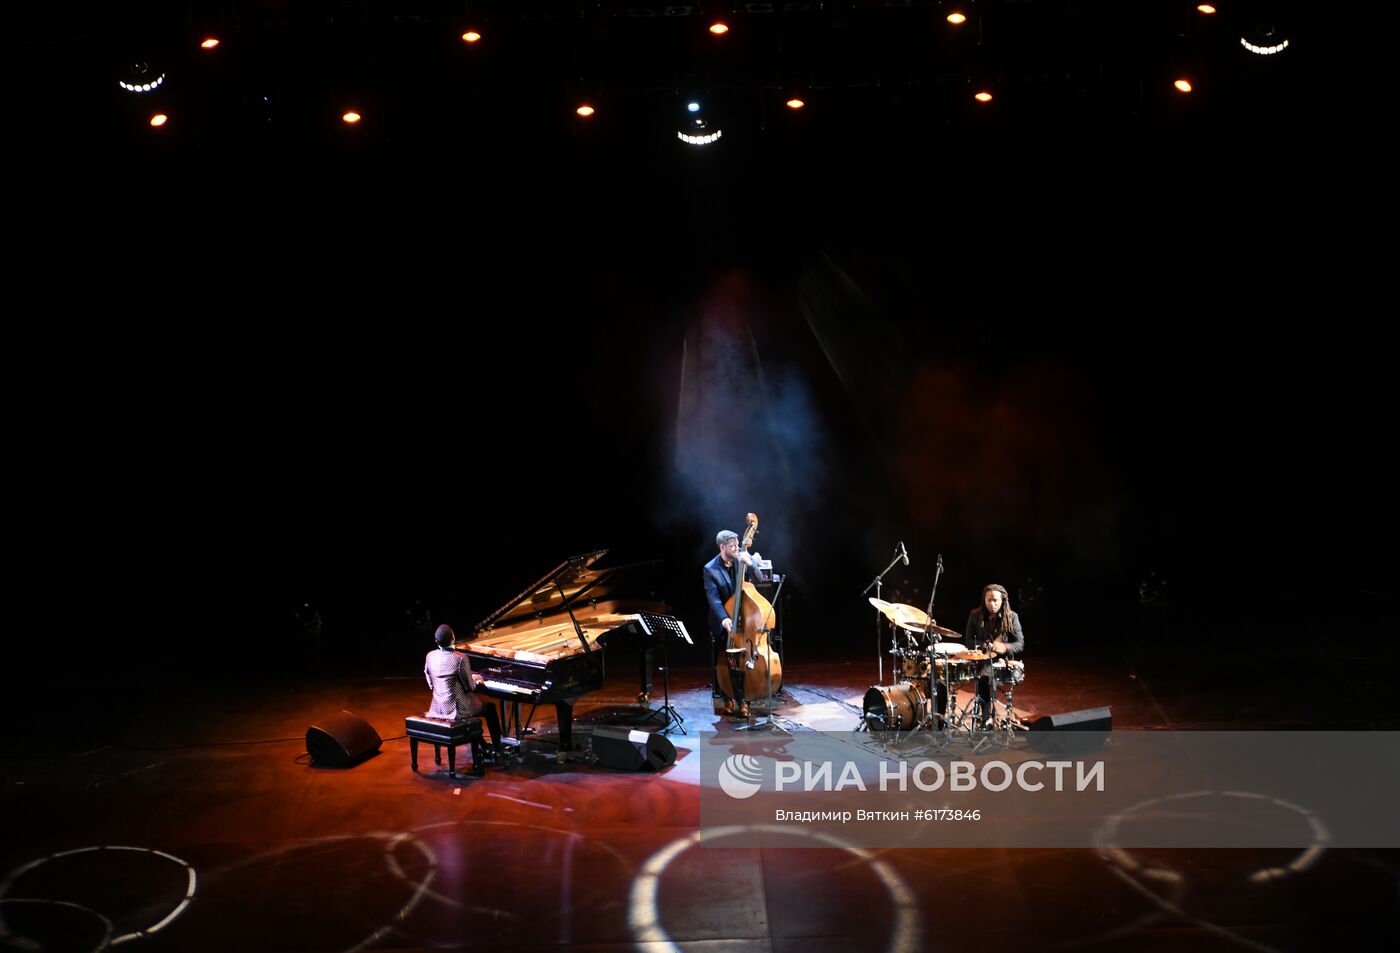 Вечер джаза на фестивале искусств Ю. Башмета в Сочи